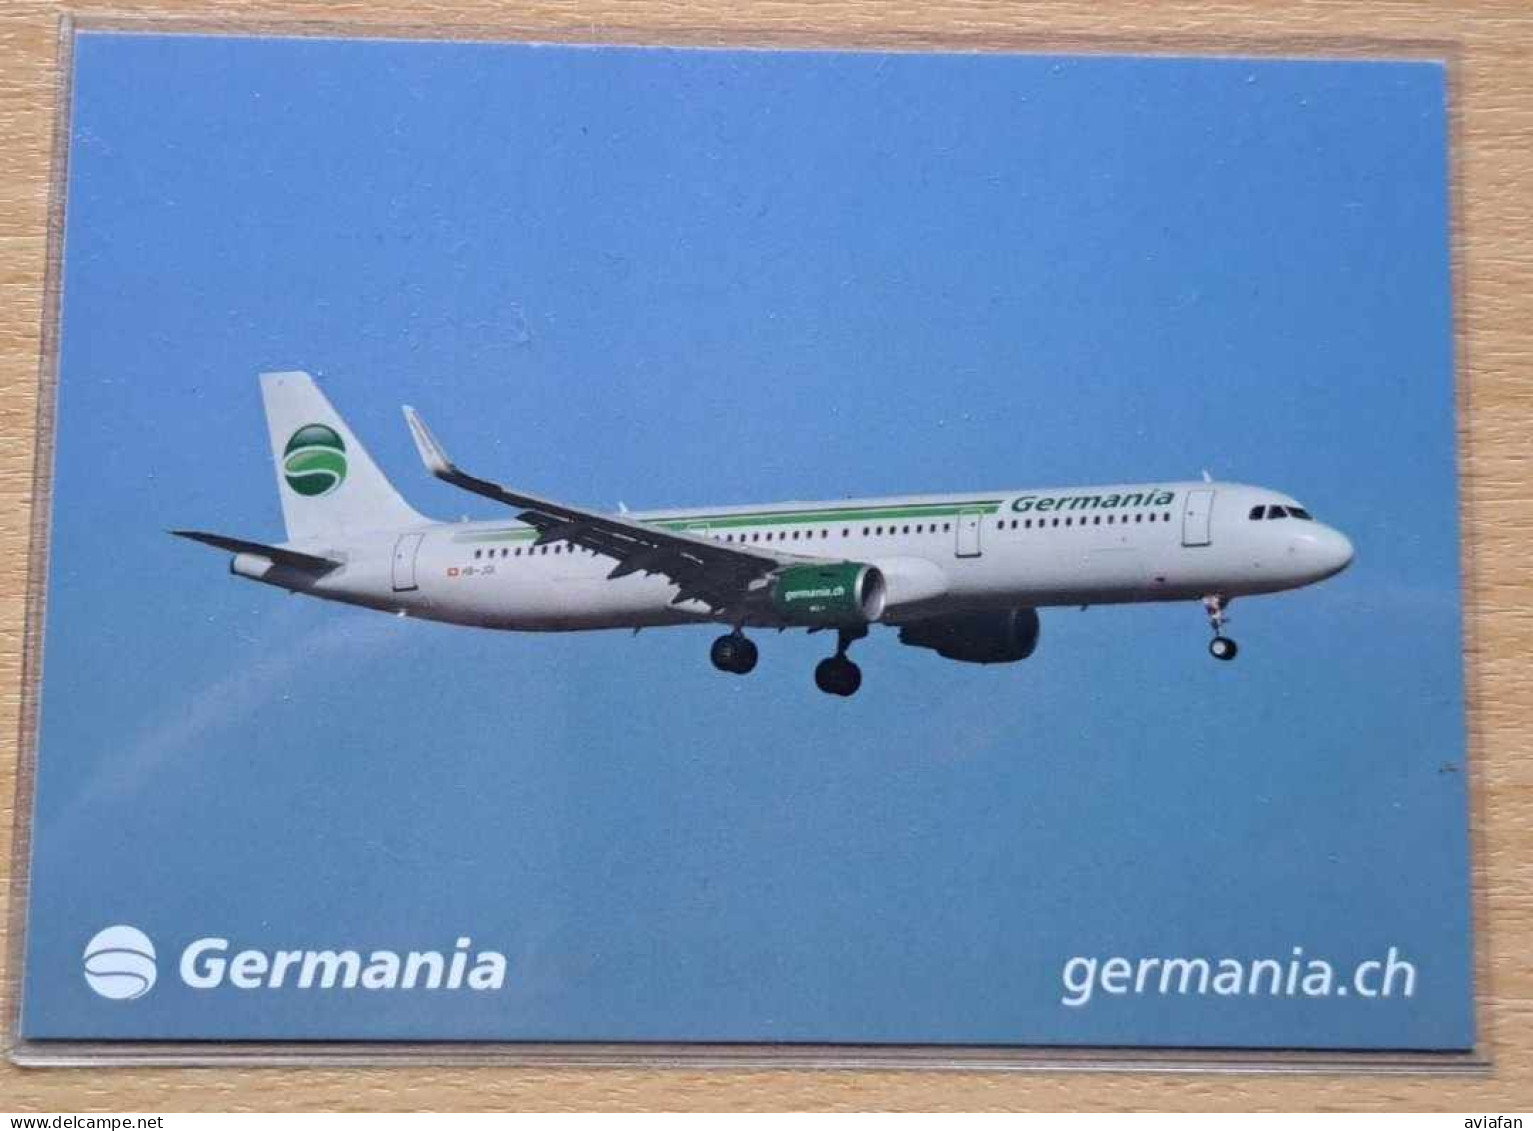 GERMANIA Switzerland A321 Postcard - Airline Issue - 1946-....: Modern Tijdperk